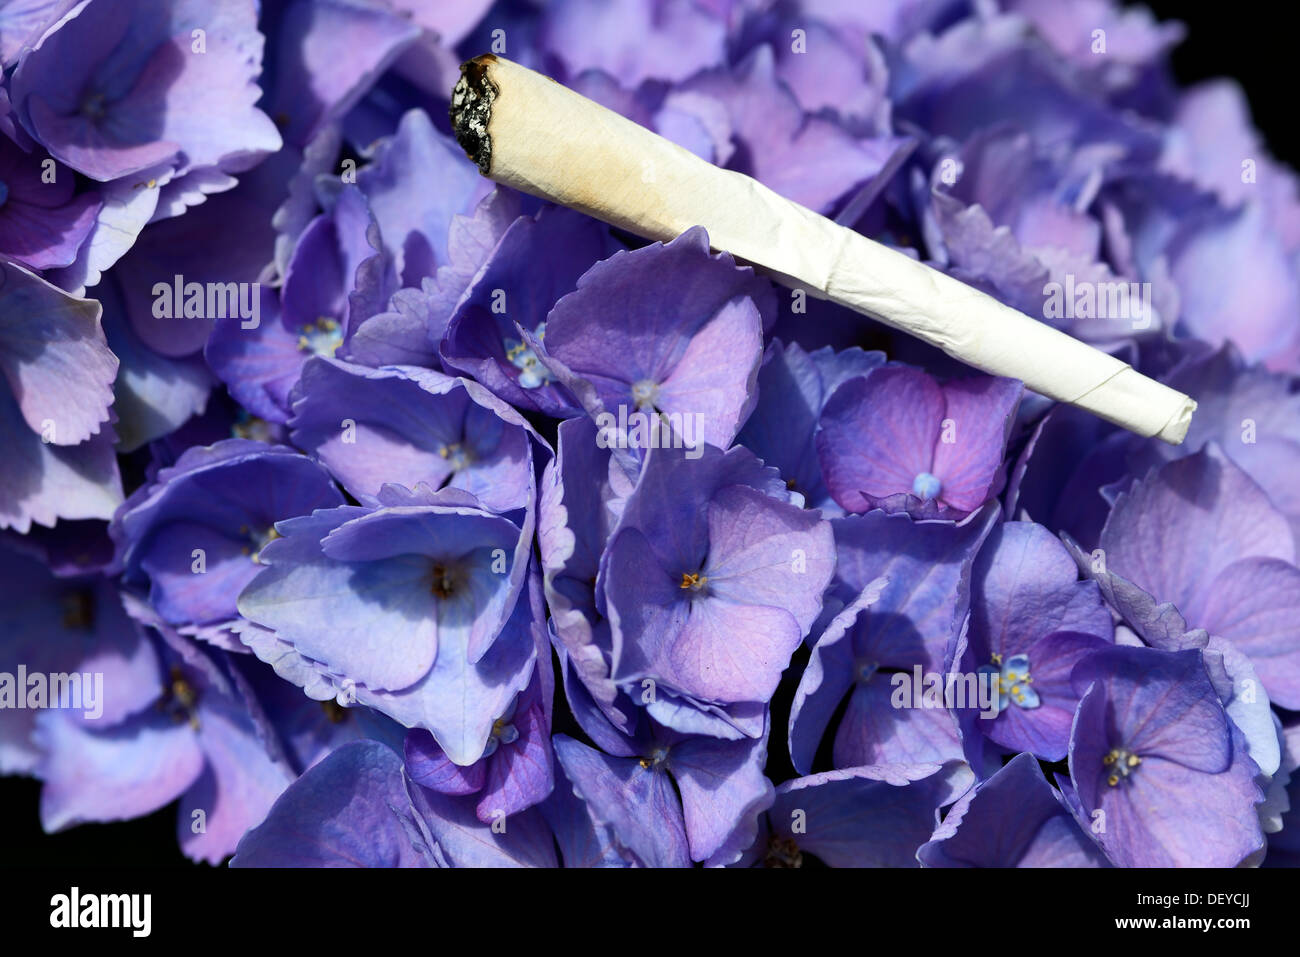 Gemeinsame Joint Auf Einer Hortensie, Rauchen auf eine Hortensie, Hortensie Blätter, Rauch von Hortensienblättern Stockfoto